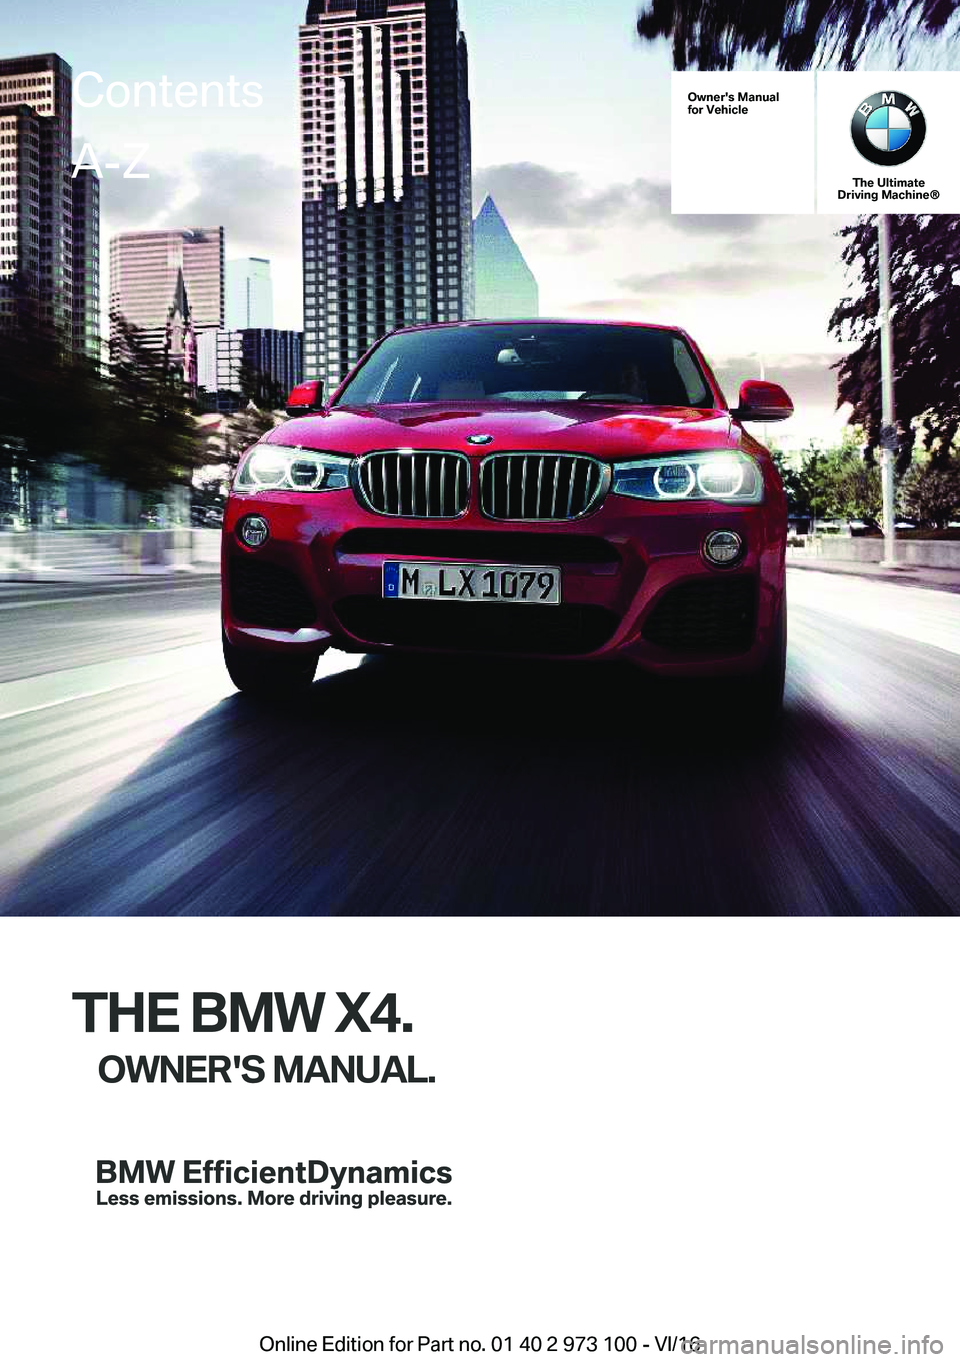 BMW X4 2017  Owners Manual �O�w�n�e�r�'�s��M�a�n�u�a�l
�f�o�r��V�e�h�i�c�l�e
�T�h�e��U�l�t�i�m�a�t�e
�D�r�i�v�i�n�g��M�a�c�h�i�n�e�n
�T�H�E��B�M�W��X�4�.
�O�W�N�E�R�'�S��M�A�N�U�A�L�.
�C�o�n�t�e�n�t�s�A�-�Z
�O�n�